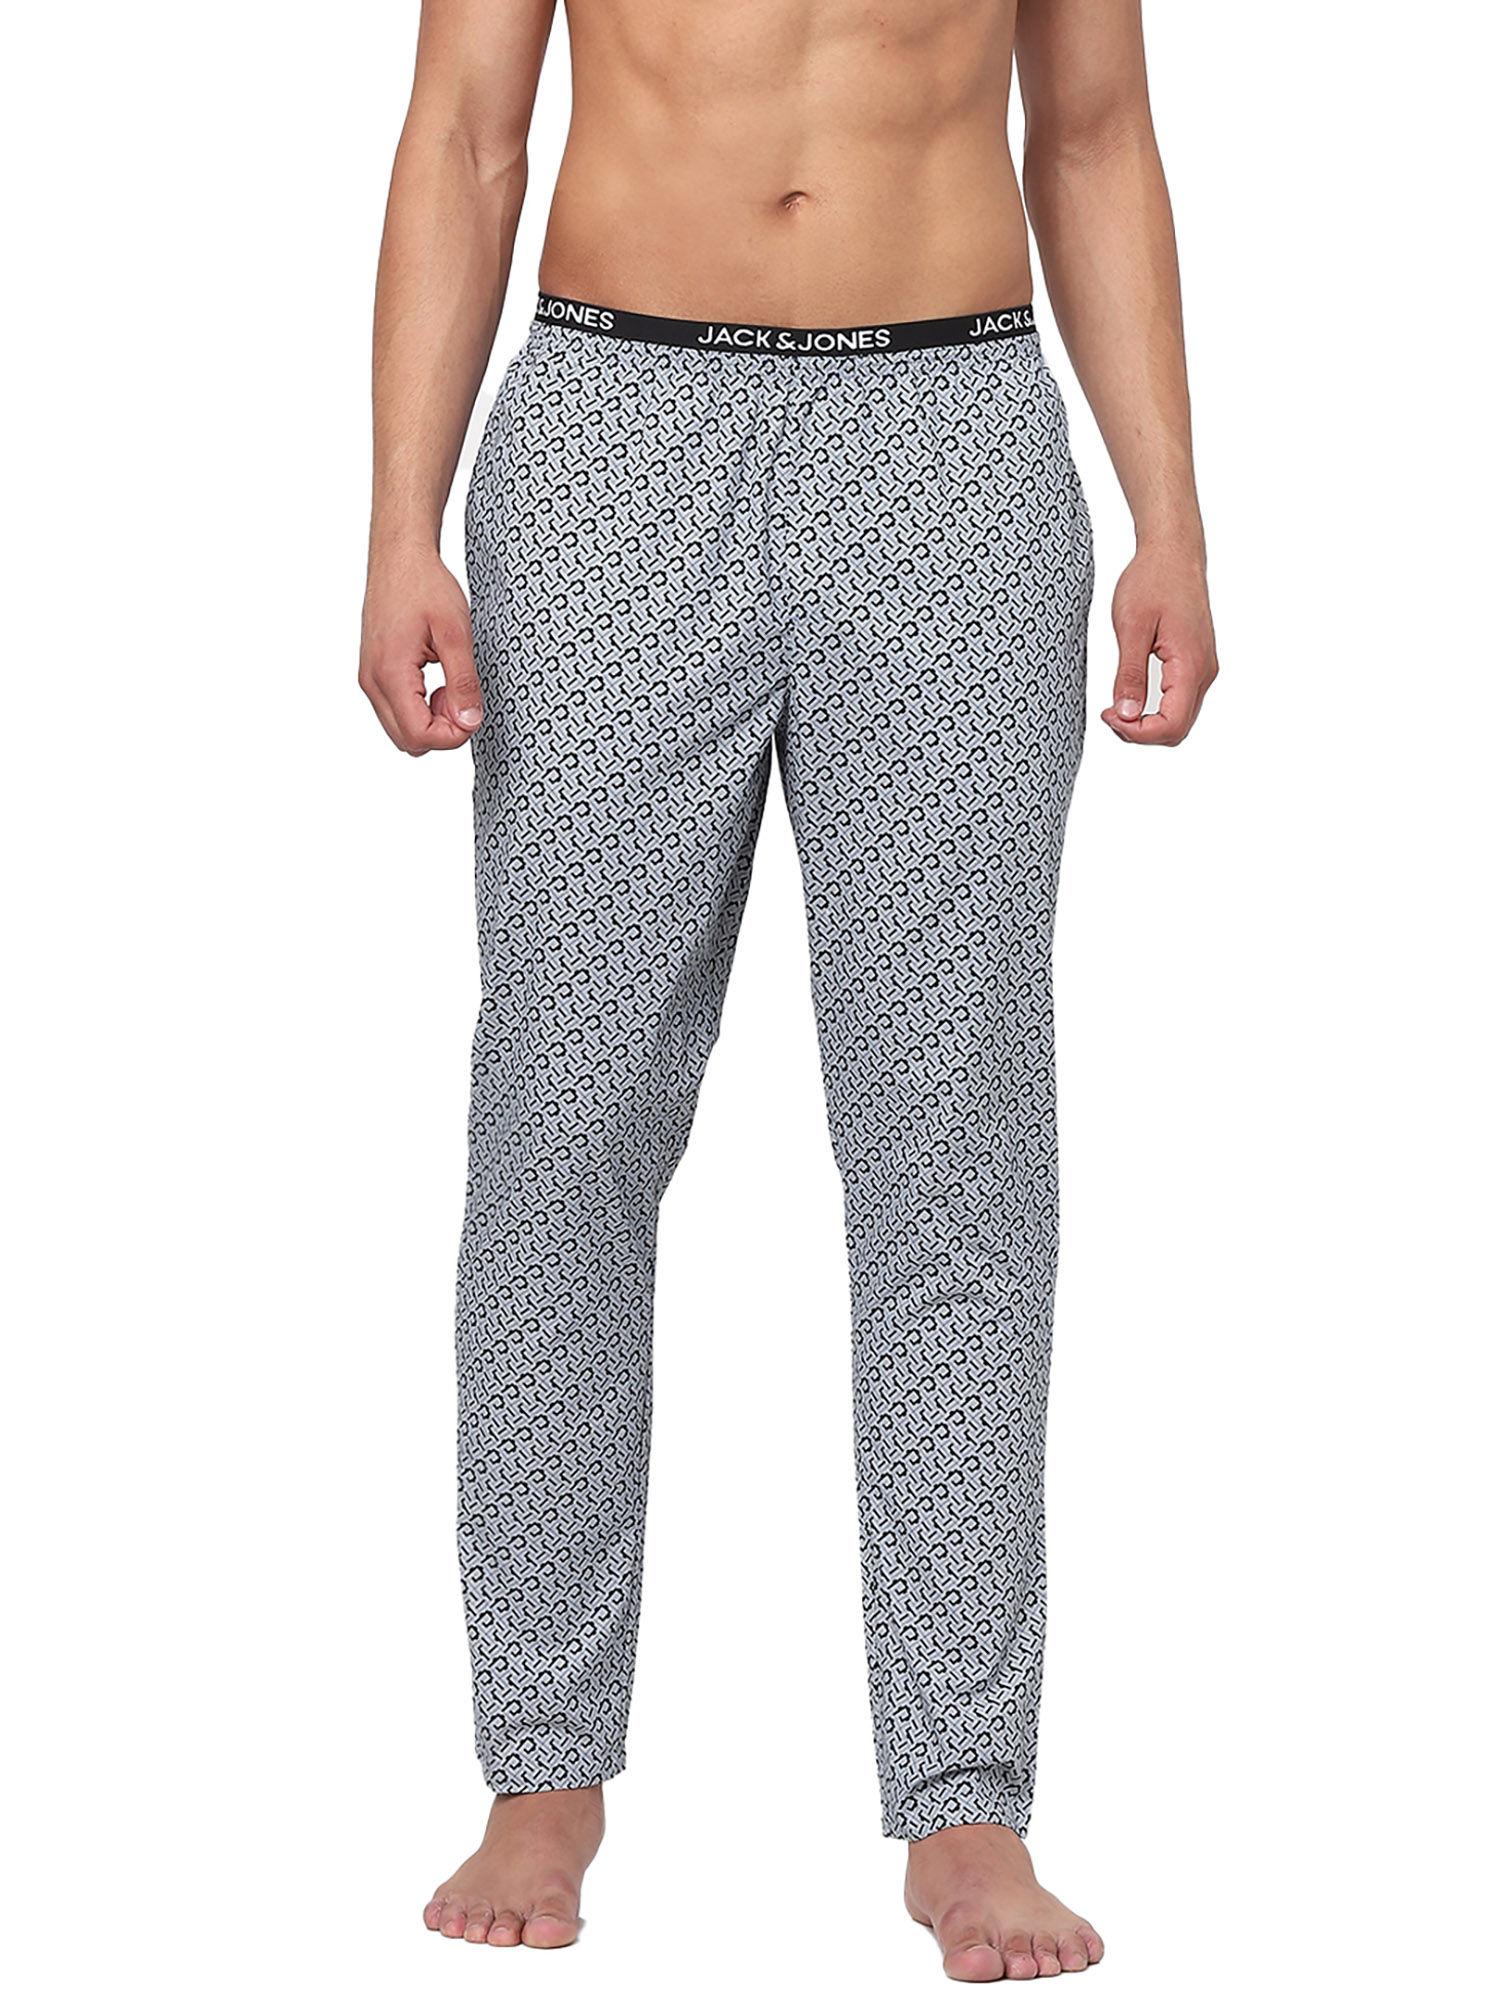 Grey Printed Camo Pyjamas